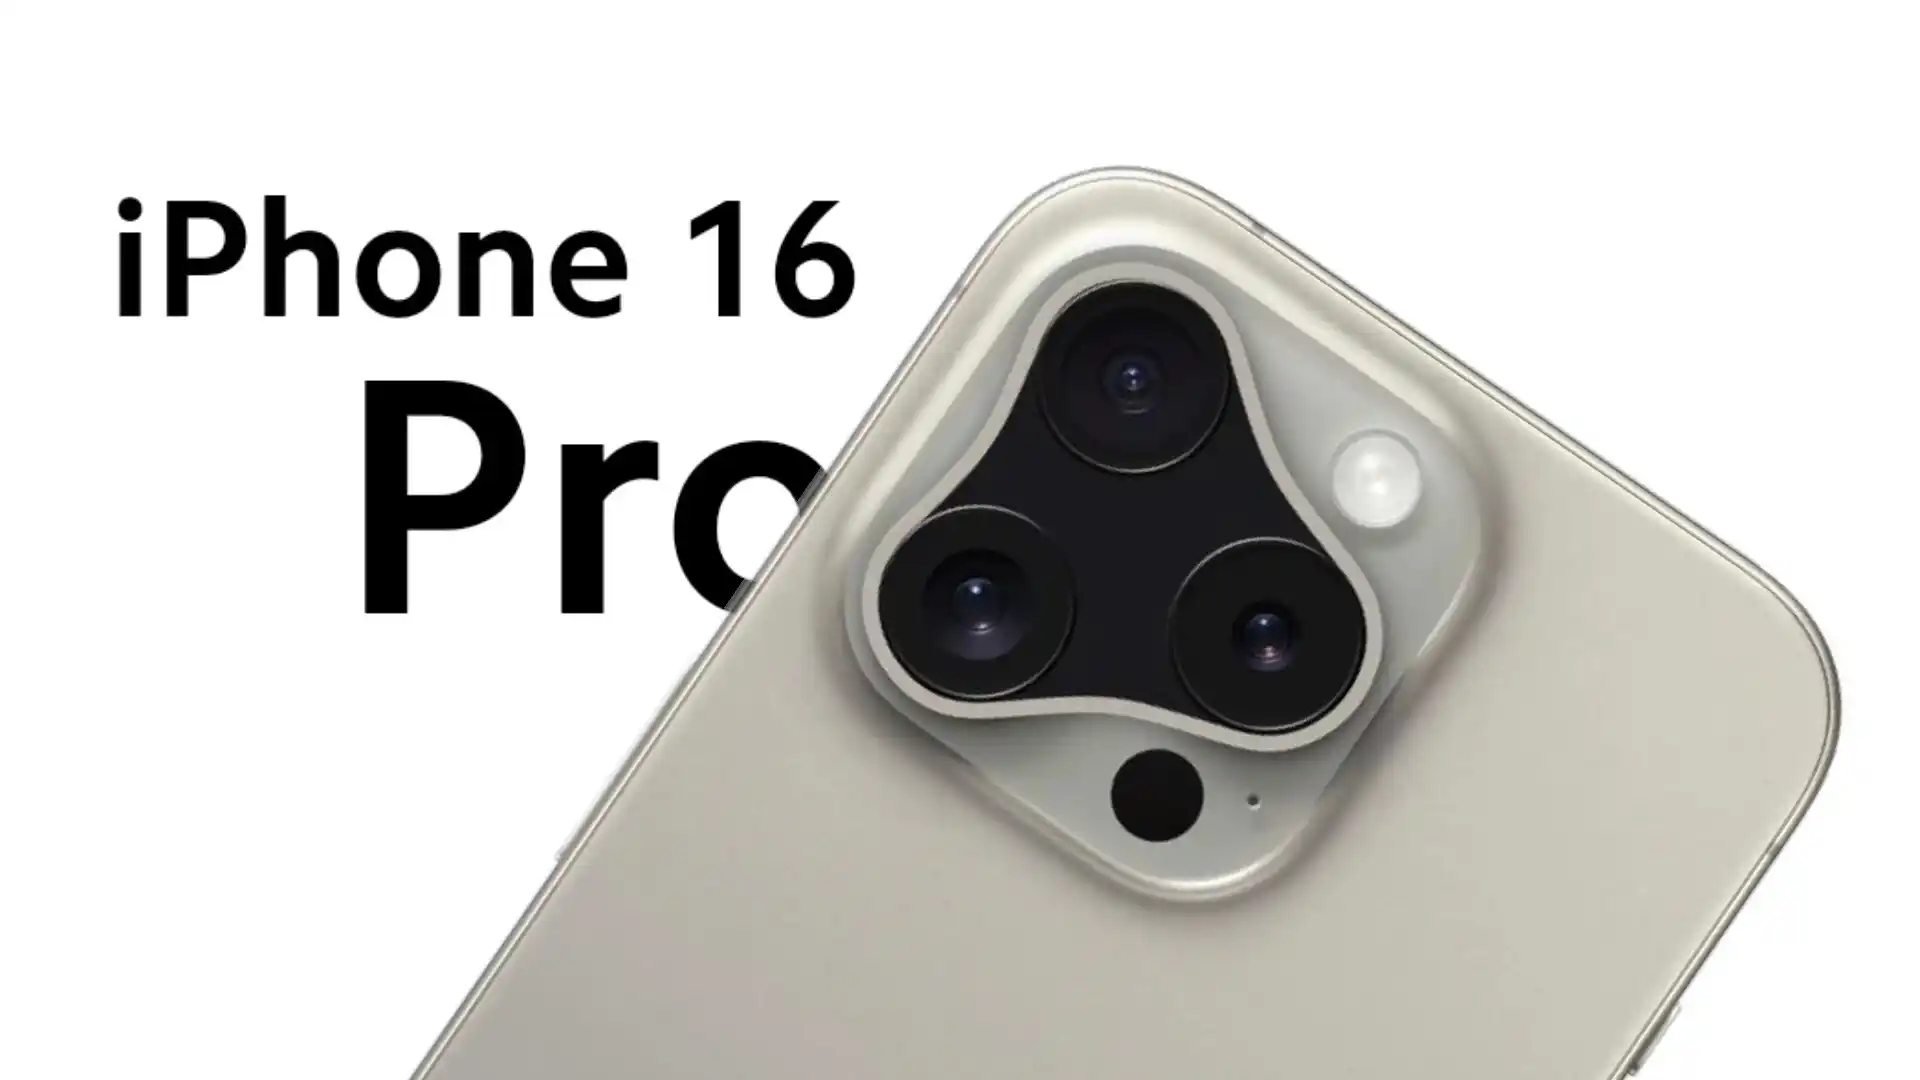 iPhone 16 Pro lộ thêm hình ảnh chi tiết với thiết kế chấn động, ngoại hình đổi mới đến khó nhận ra- Ảnh 2.